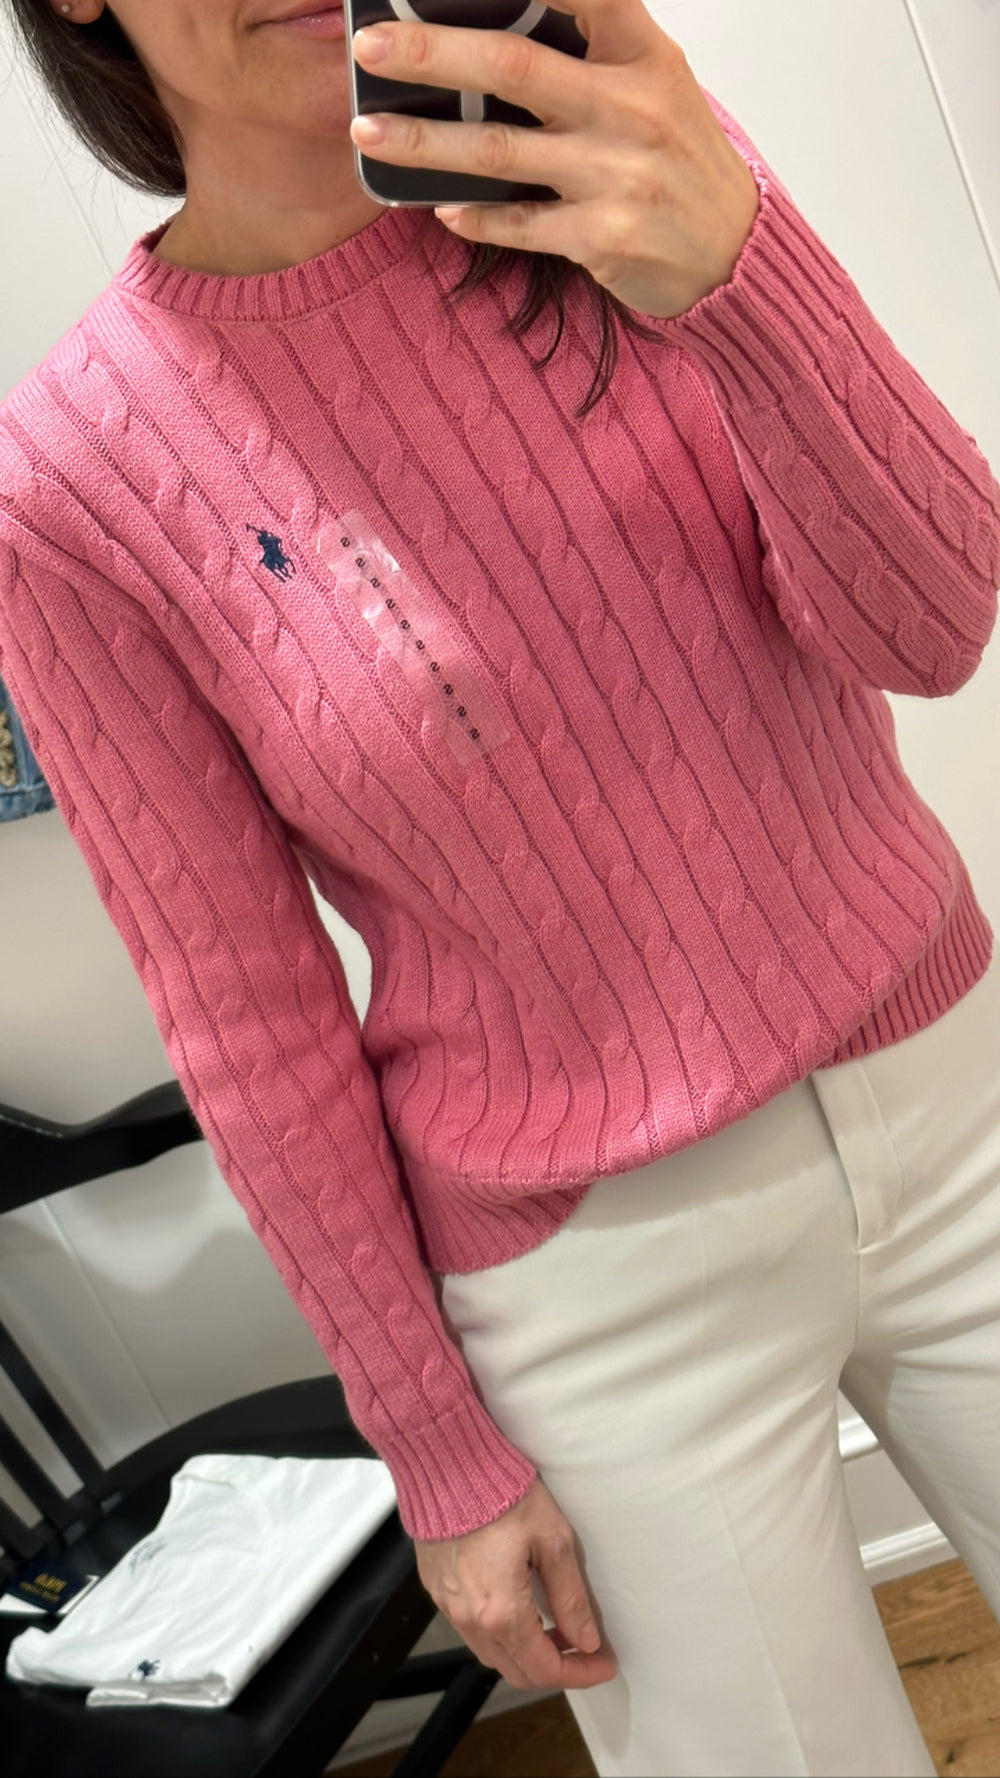 Women's Slim Fit Cable-Knit Sweater, Ralph Lauren